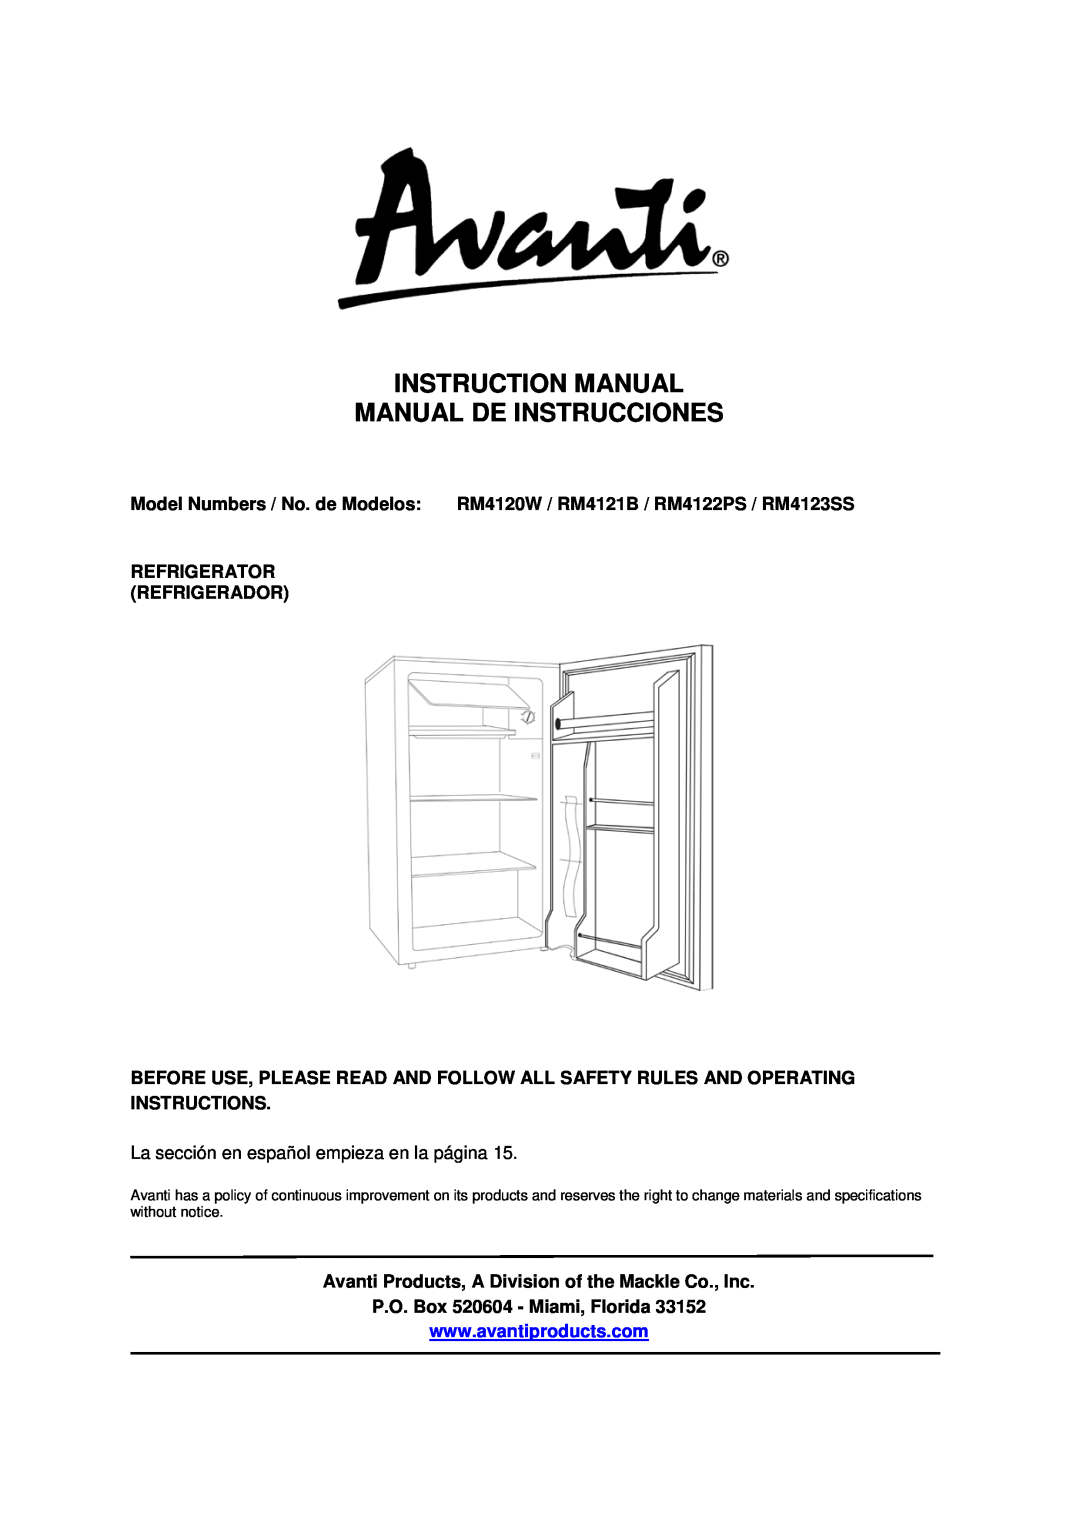 Avanti RM4122PS, RM4123SS instruction manual Refrigerator Refrigerador, P.O. Box 520604 - Miami, Florida 